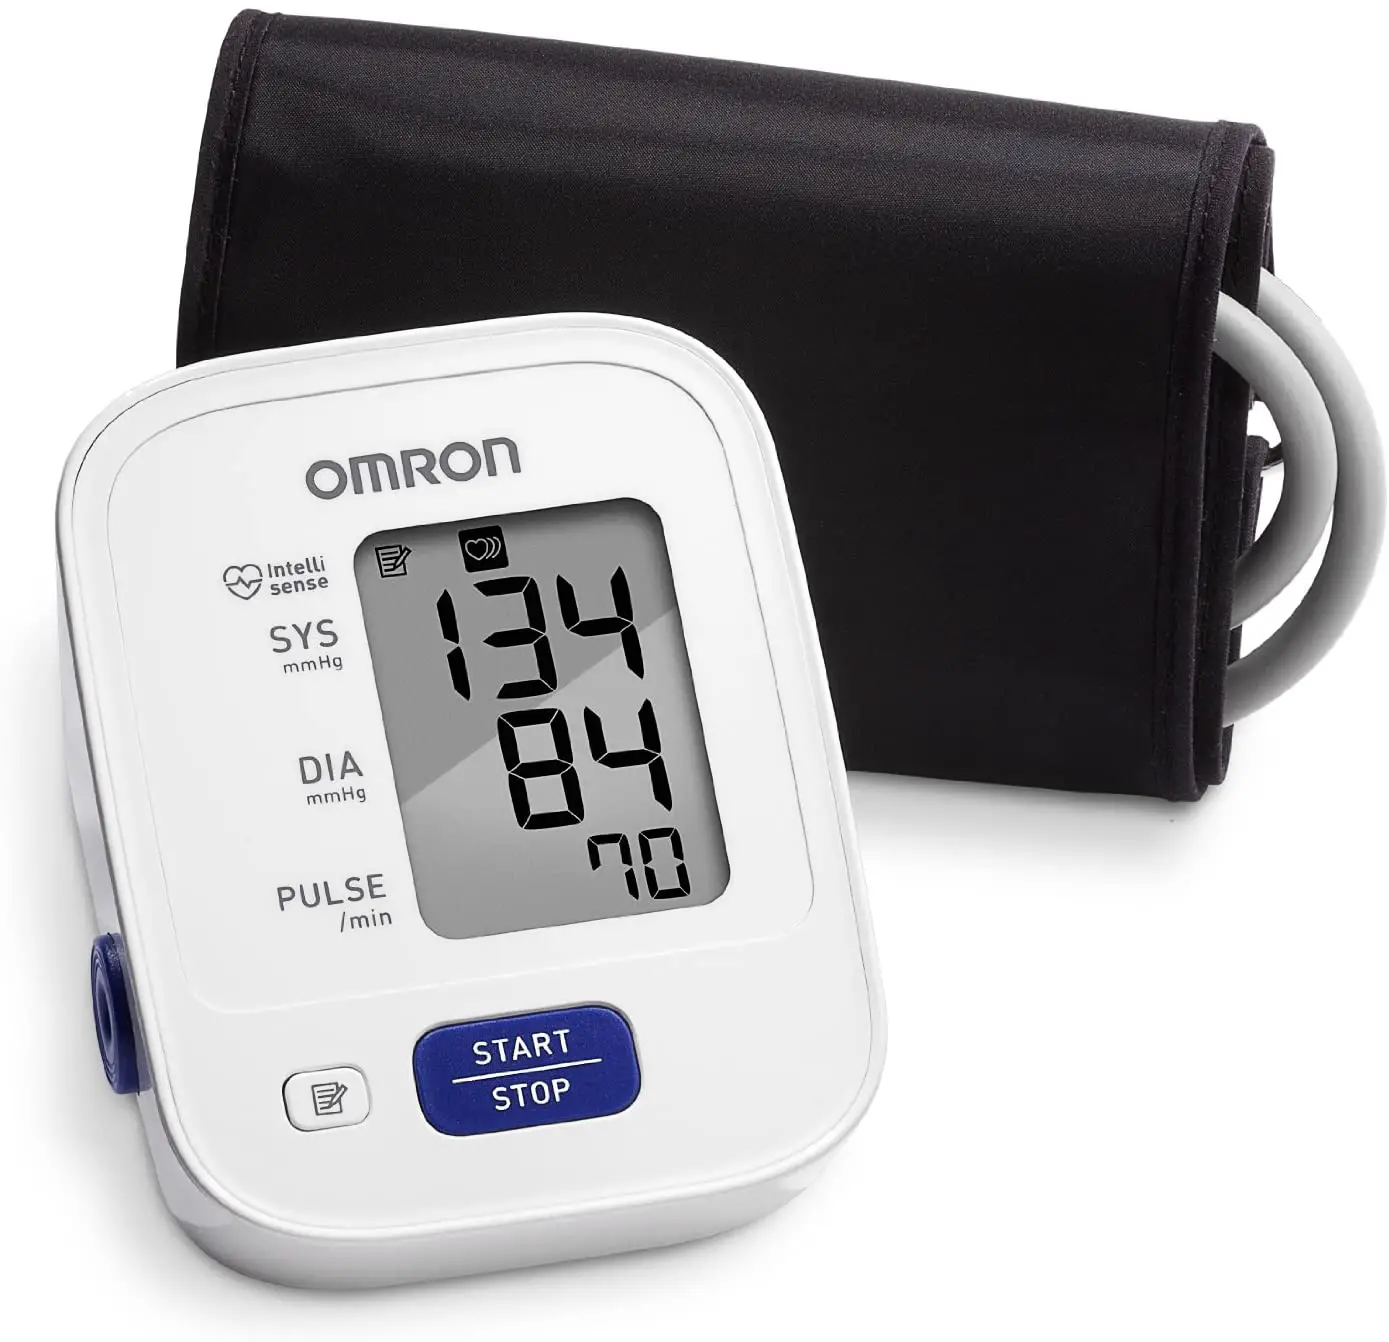 Omron 3 Series BP7100 (Upper Arm Blood Pressure Monitor) Manual - Manualsnap